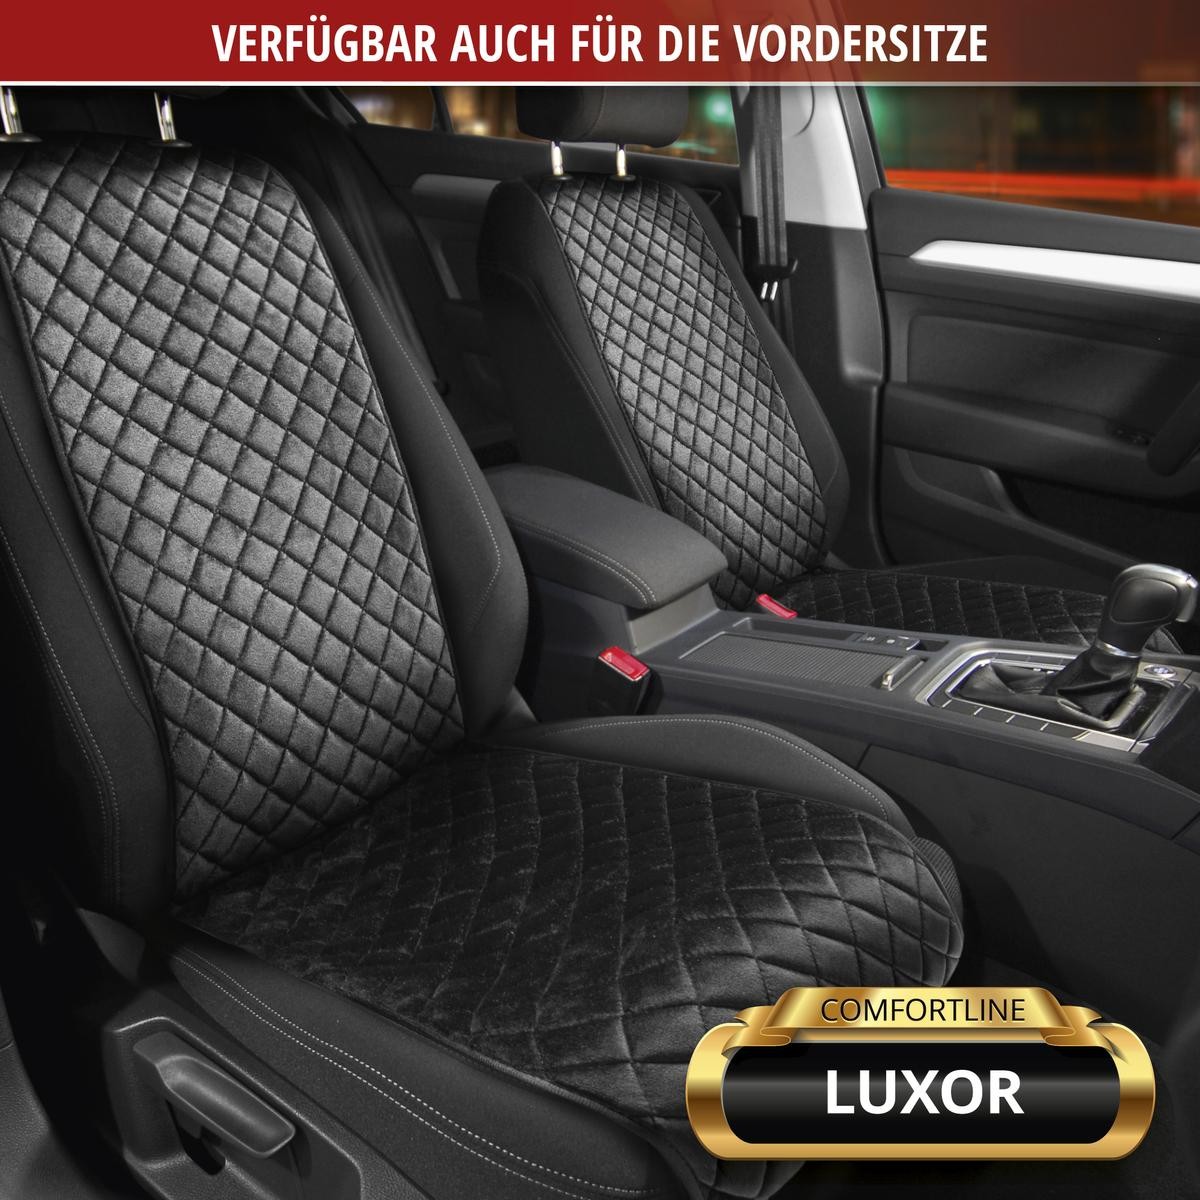 13959 WALSER Comfortline Luxor Autositzbezug schwarz, Polyester, Baumwolle,  hinten 13959 ❱❱❱ Preis und Erfahrungen